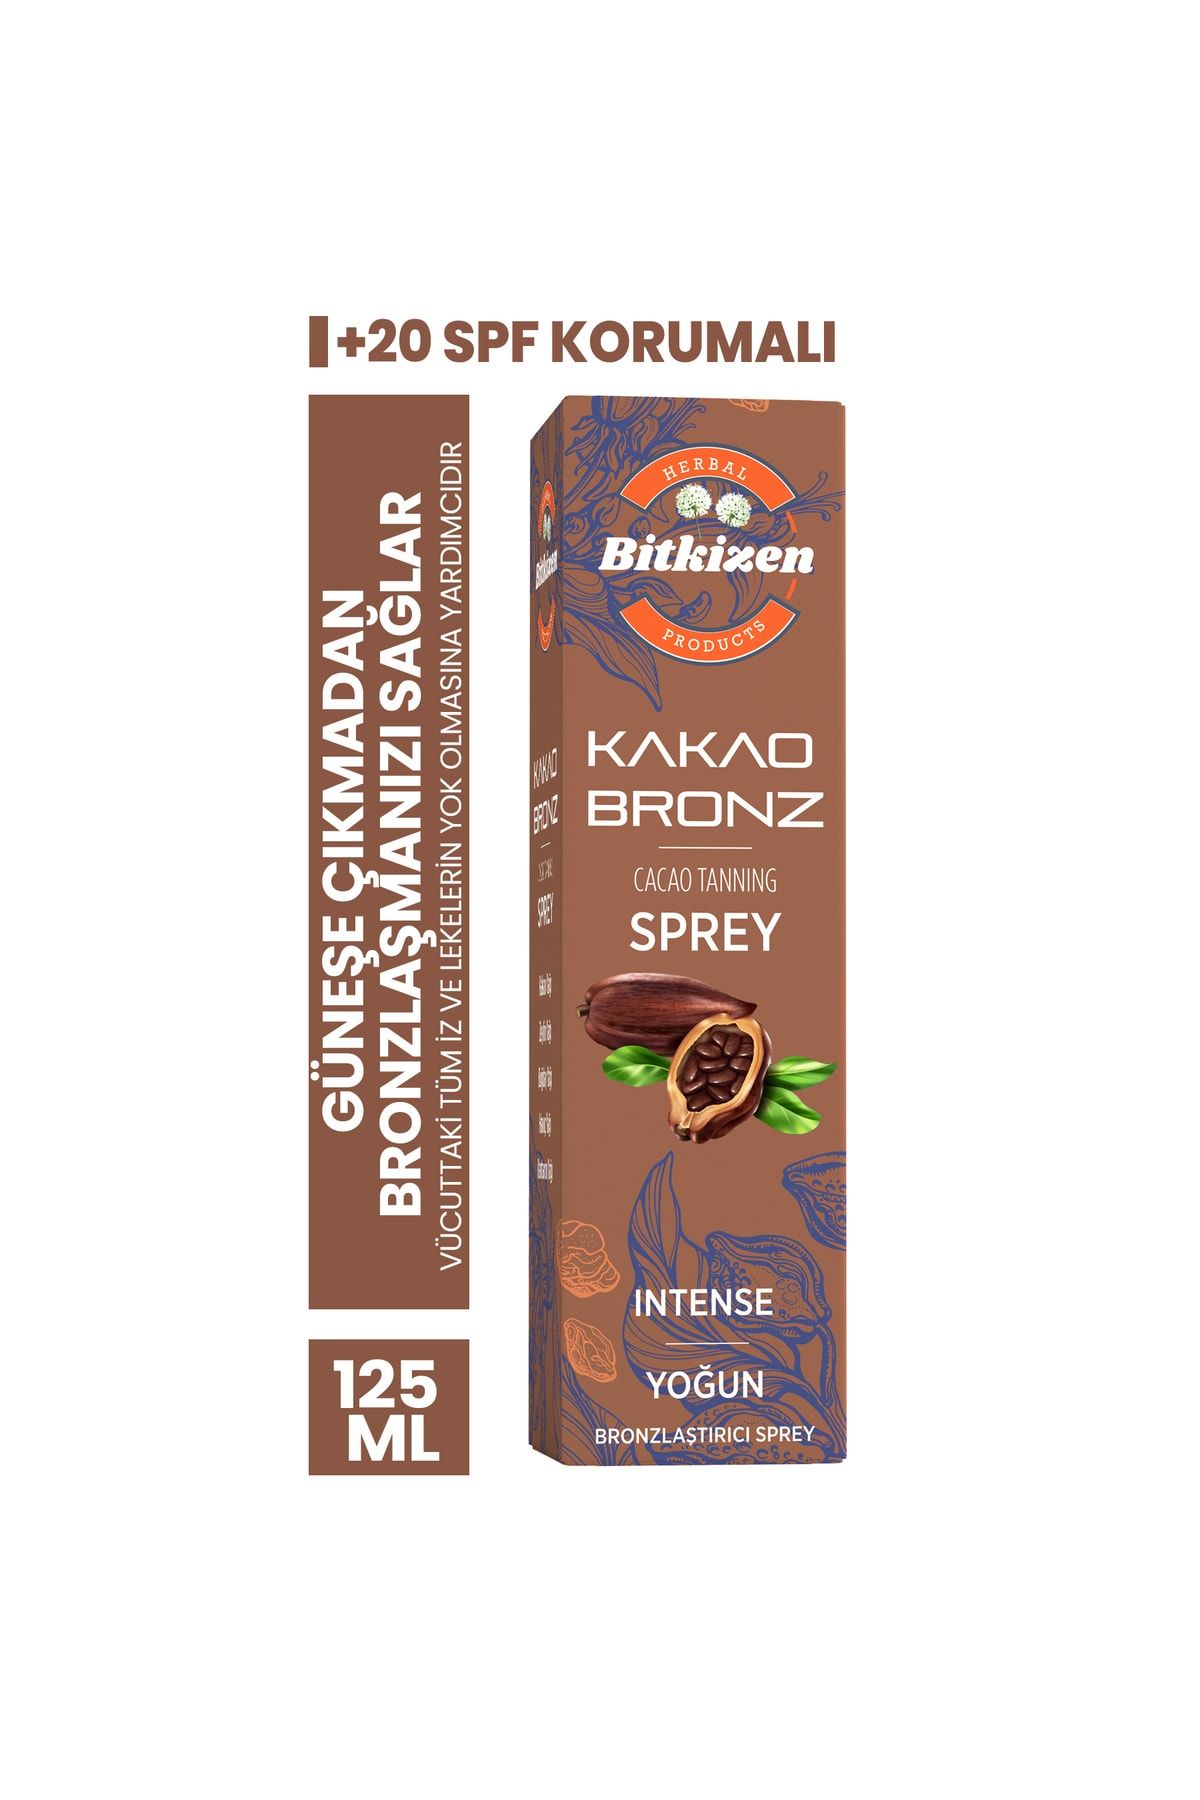 BİTKİZEN Kakaolu Bronzlaştırıcı Sprey 125 ml 20 Spf Korumalı